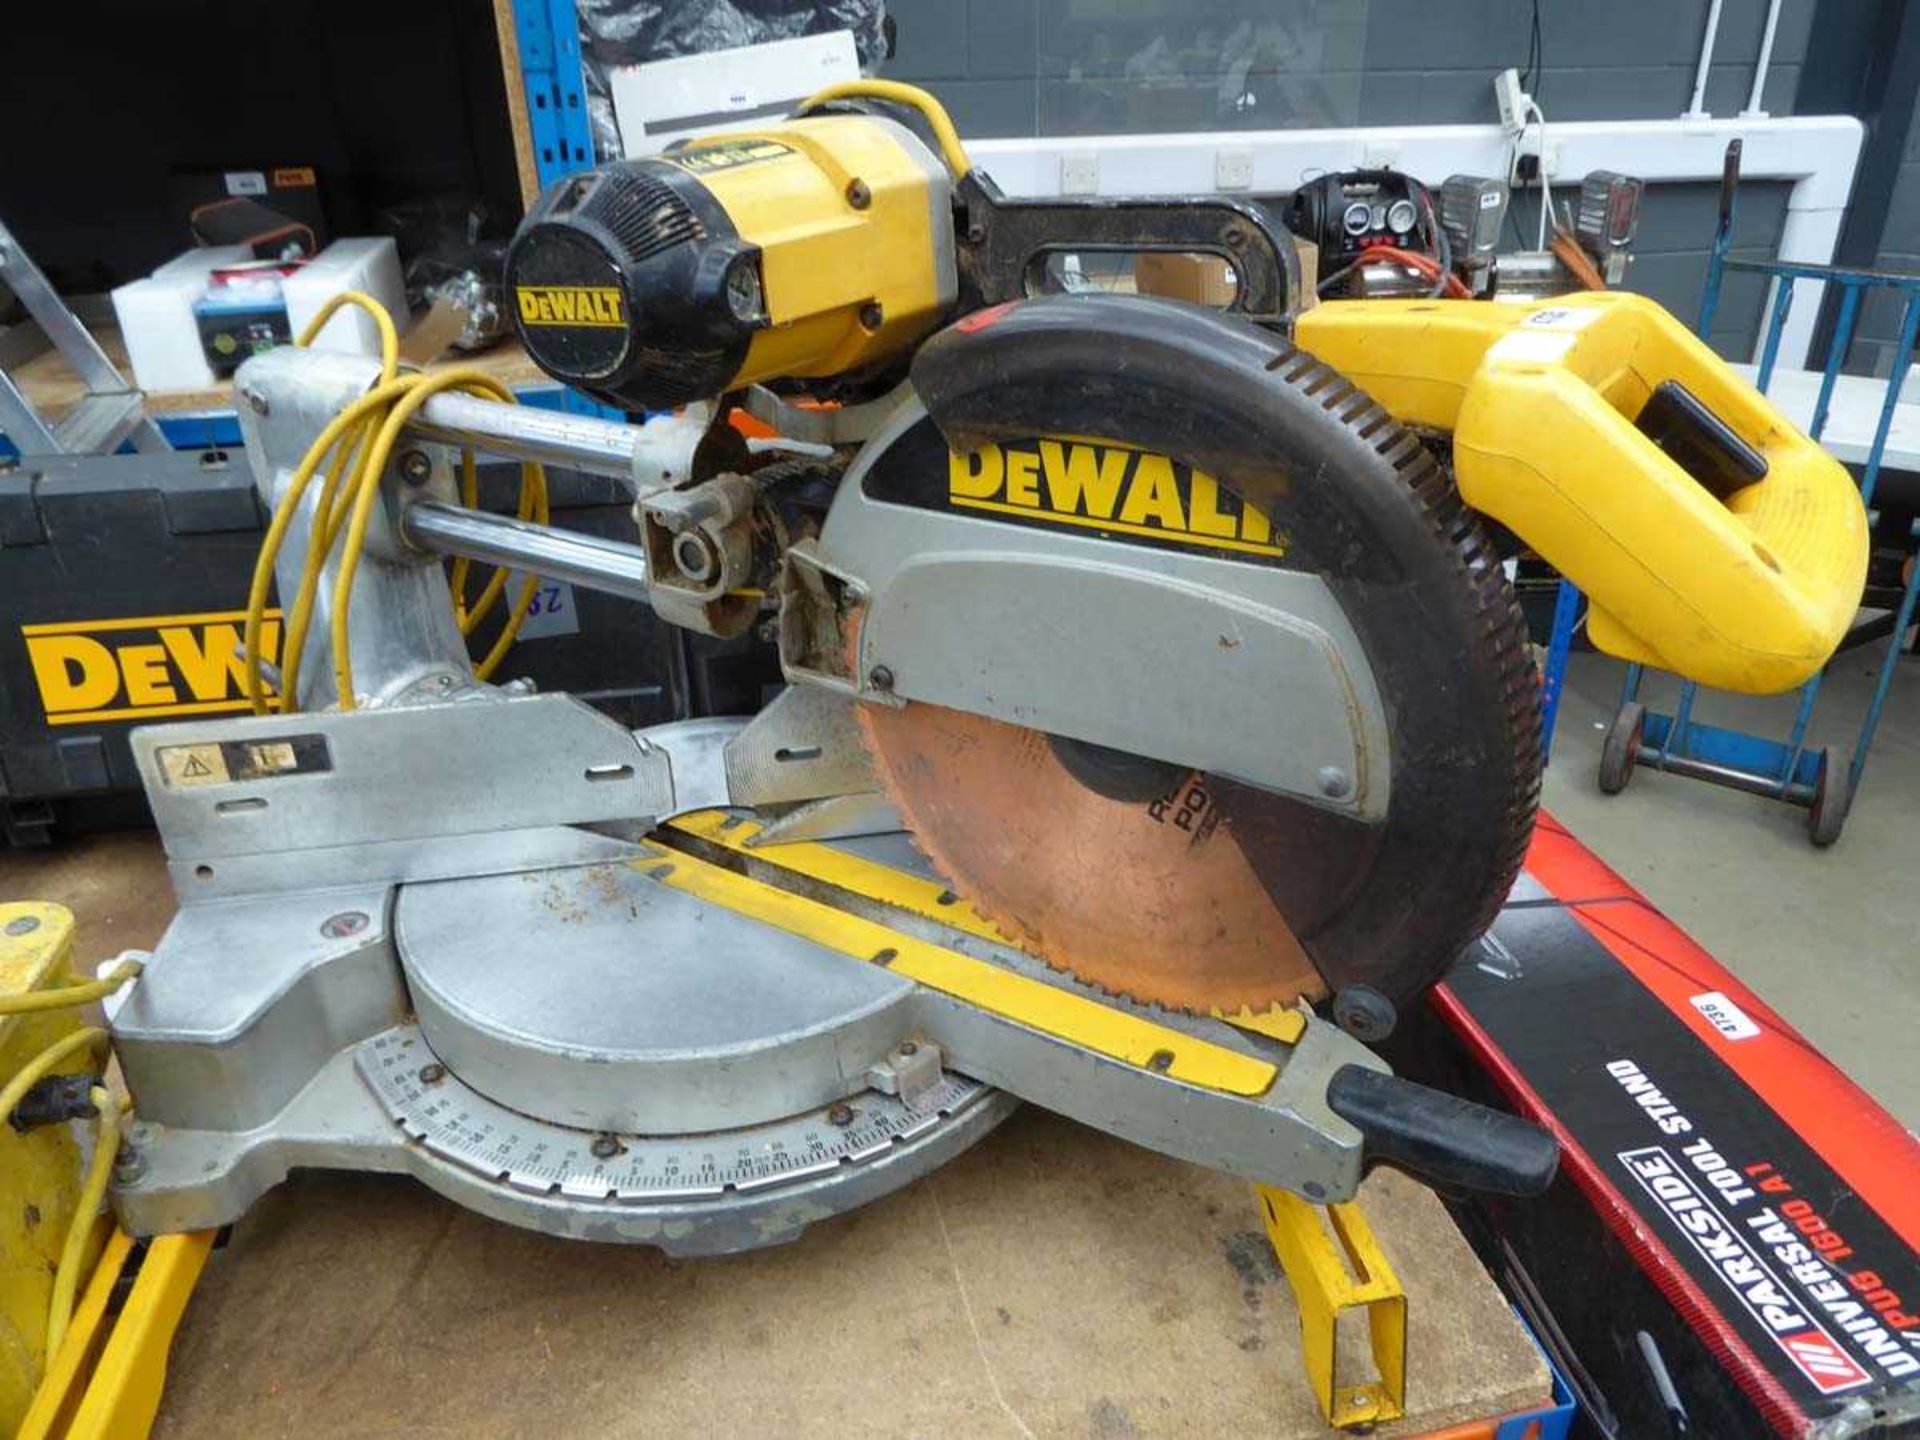 Dewalt 110v chop saw and transformer - Image 2 of 3